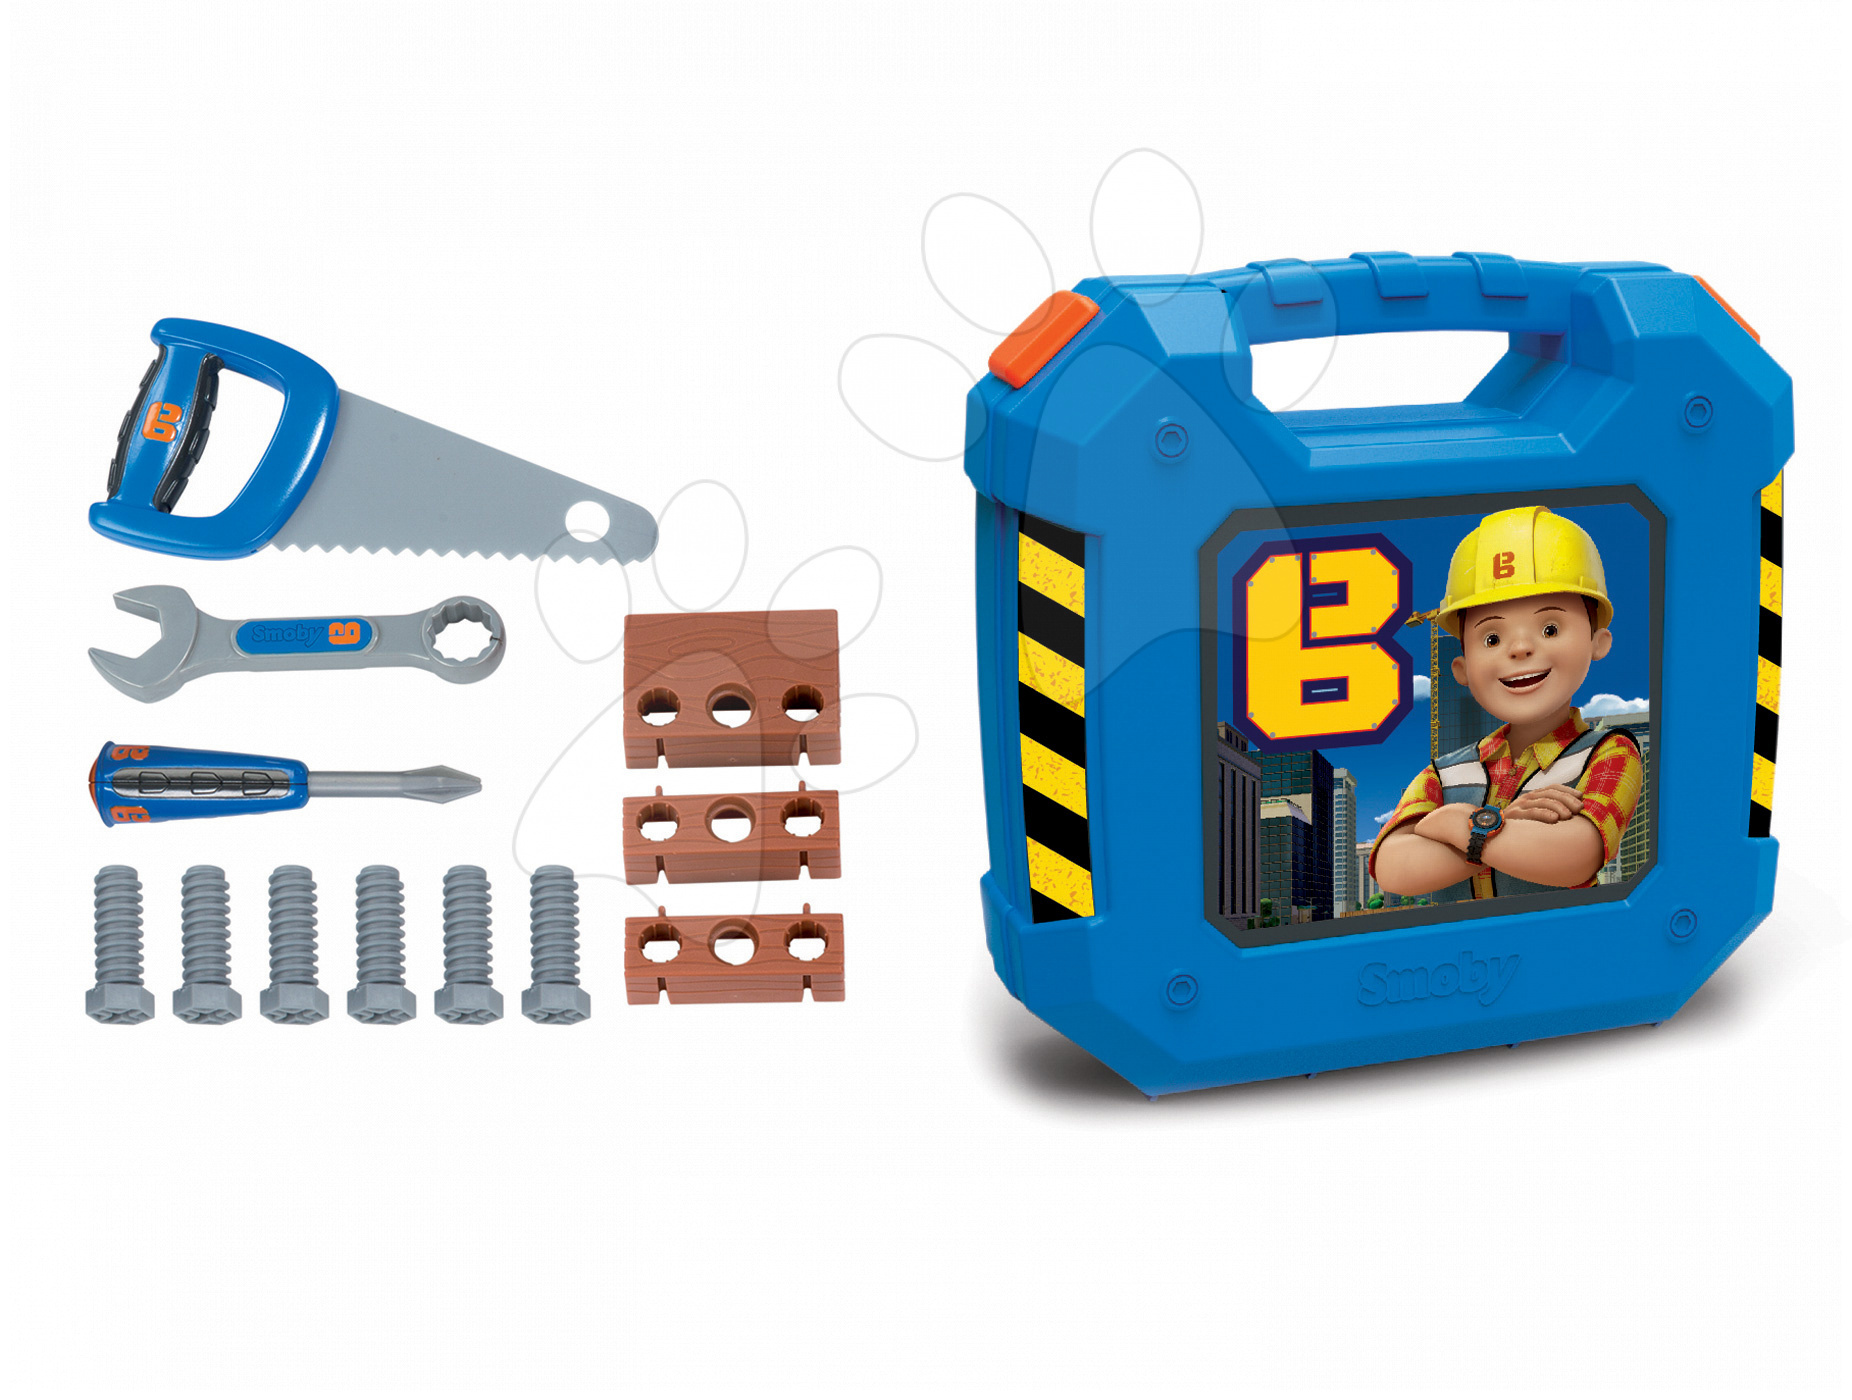 Dětský kufřík s pracovním nářadím Bořek Stavitel 360153 modrý